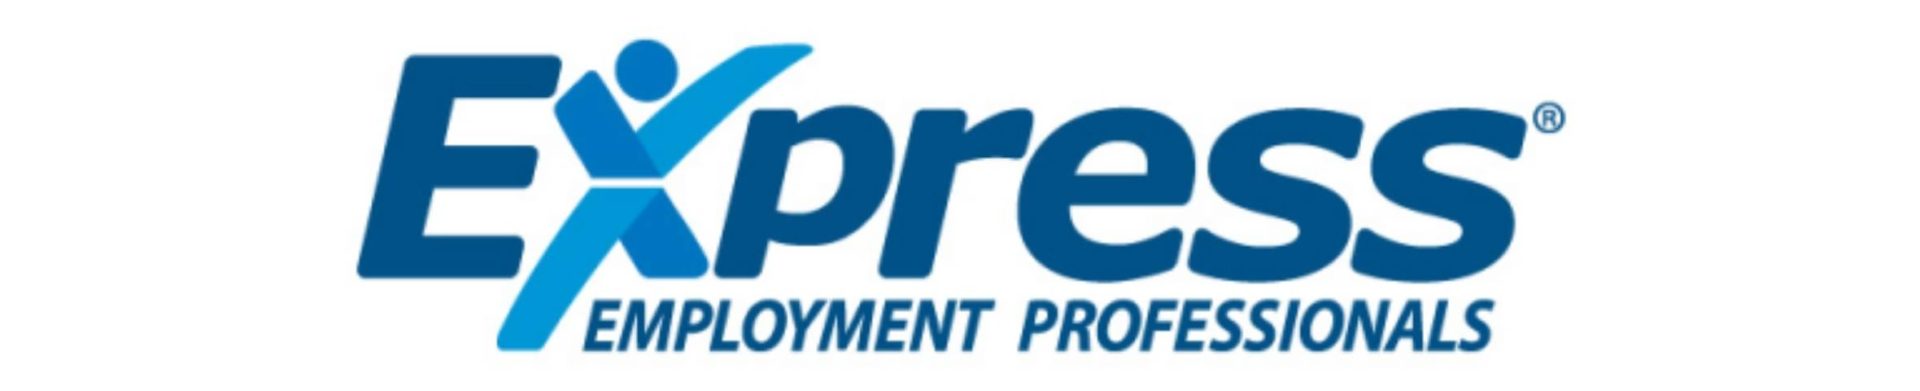 the Express Employment logo